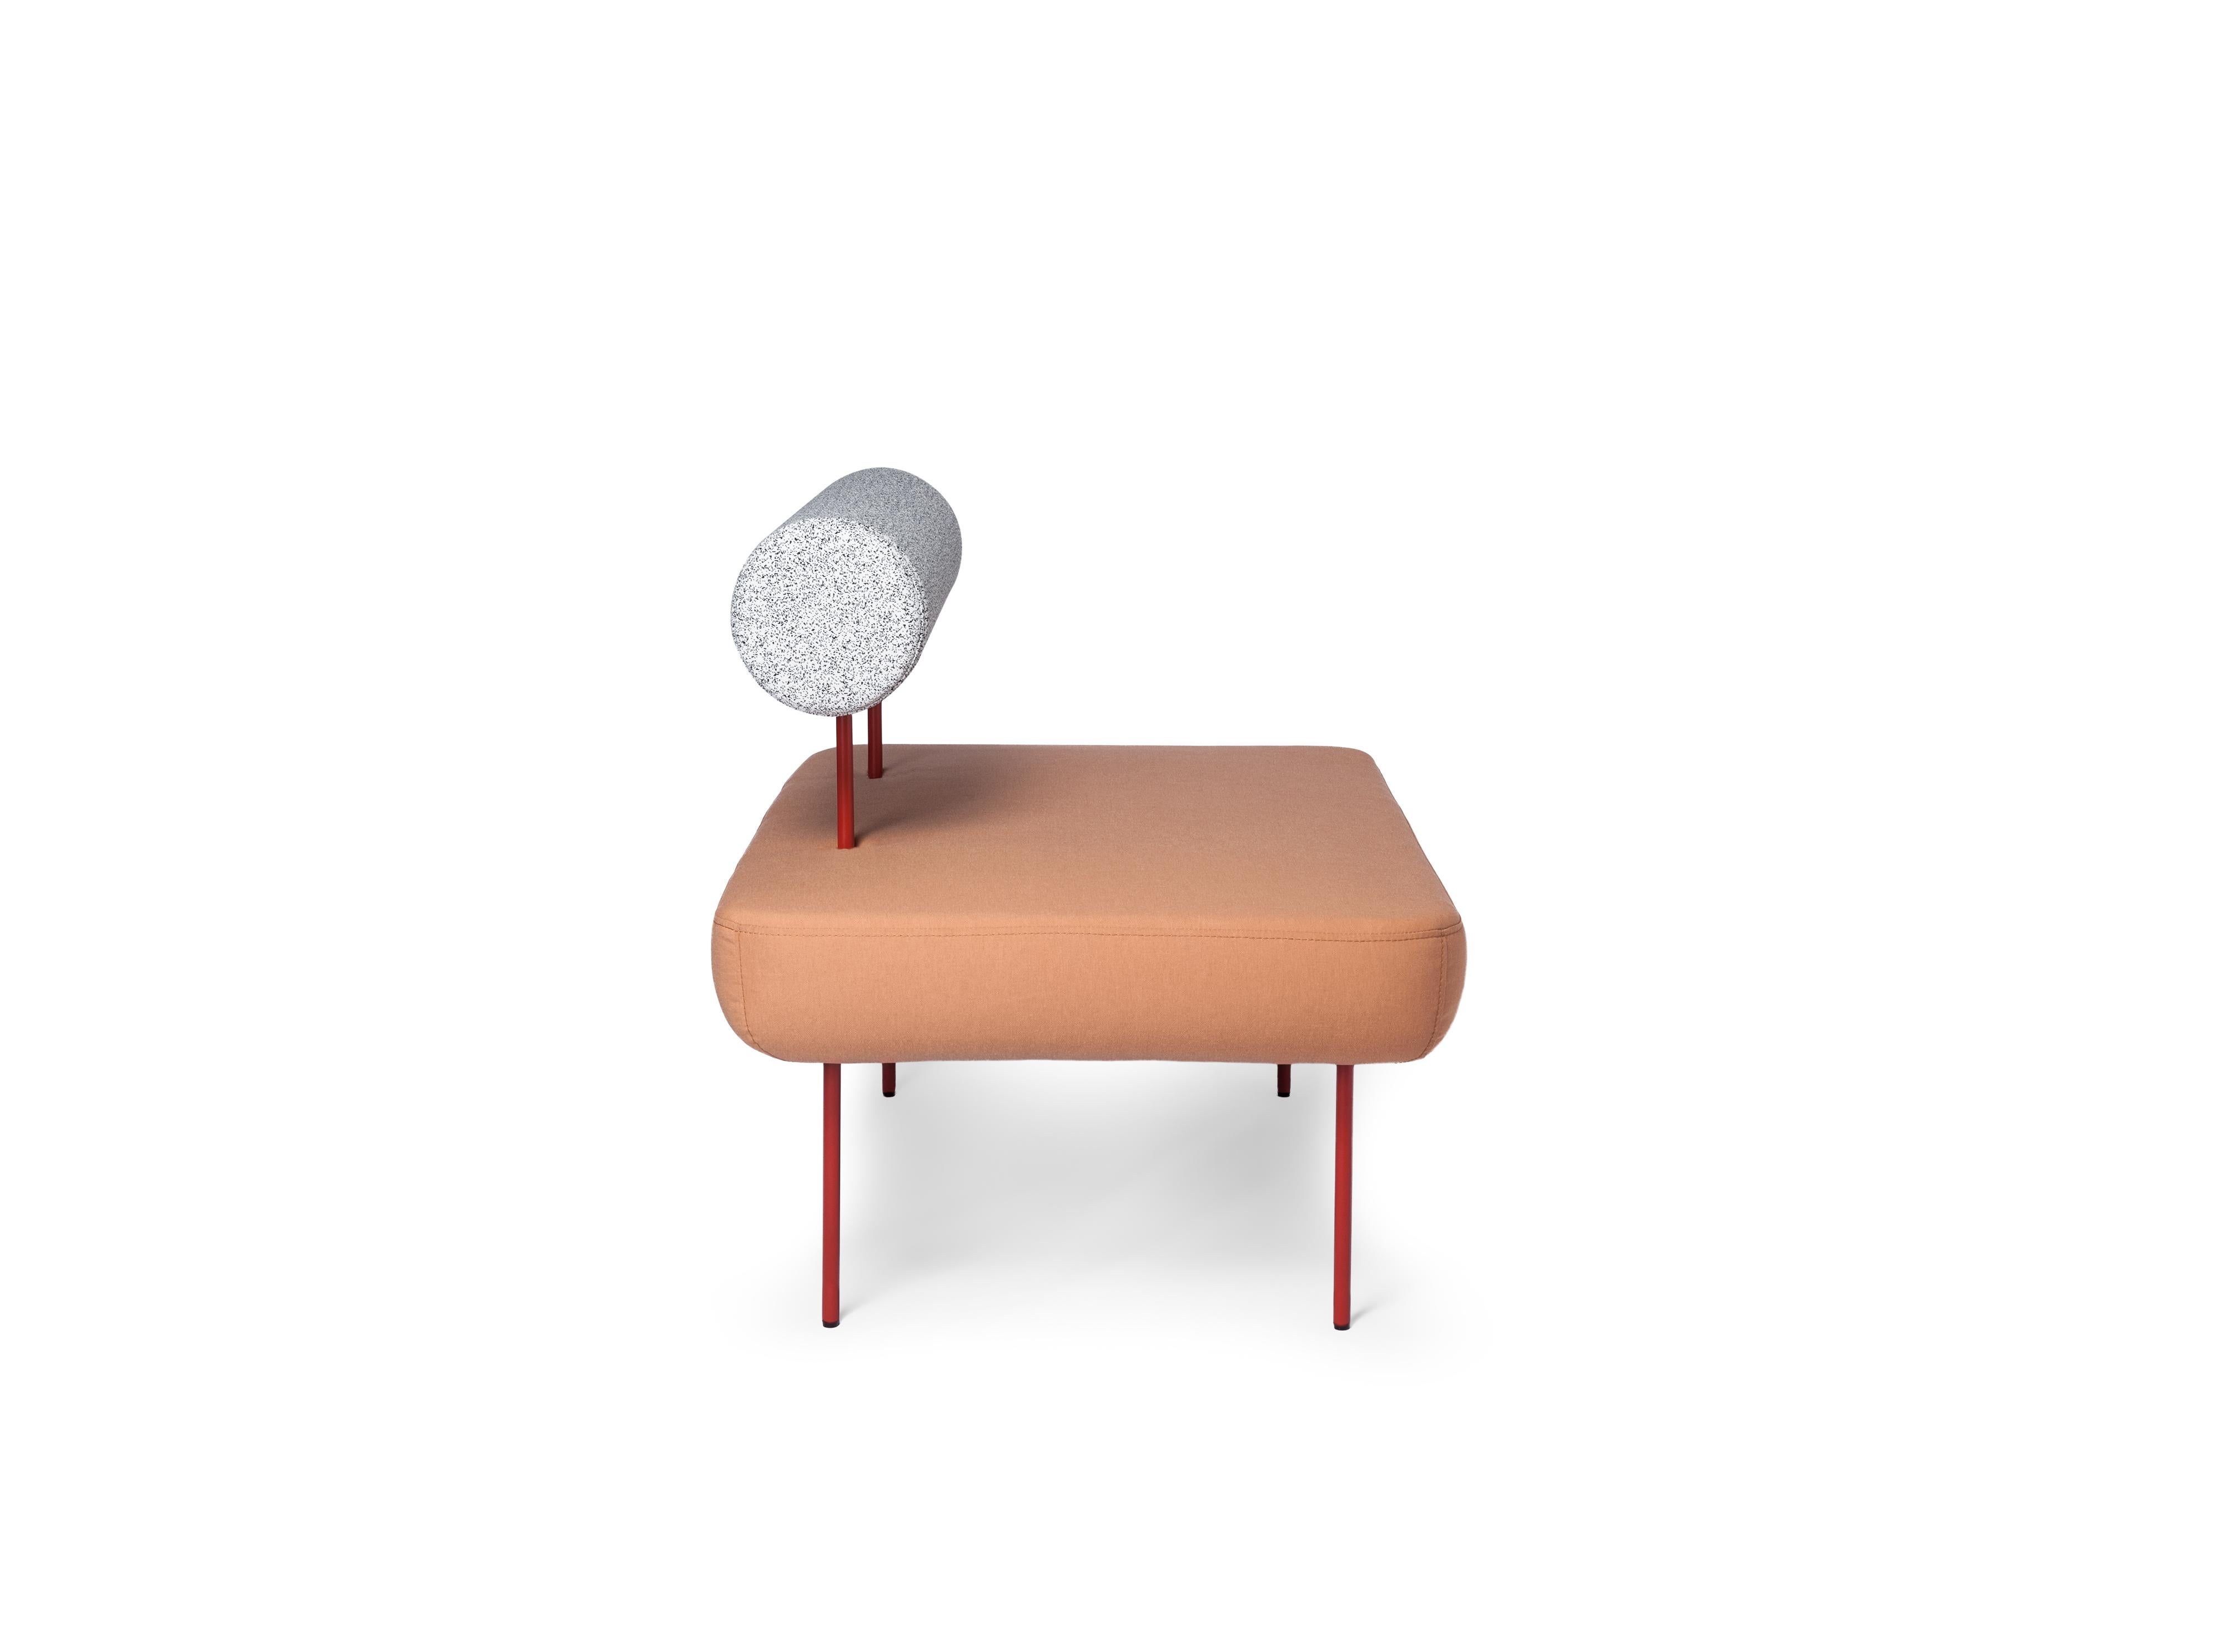 Petite Friture Large Hoff Armchair in Peach by Morten & Jonas, 2015

Hoff, créée par le duo de designers Morten & Jonas, est une collection de deux tabourets et de deux fauteuils modulaires. Ils peuvent être combinés pour former un canapé ainsi